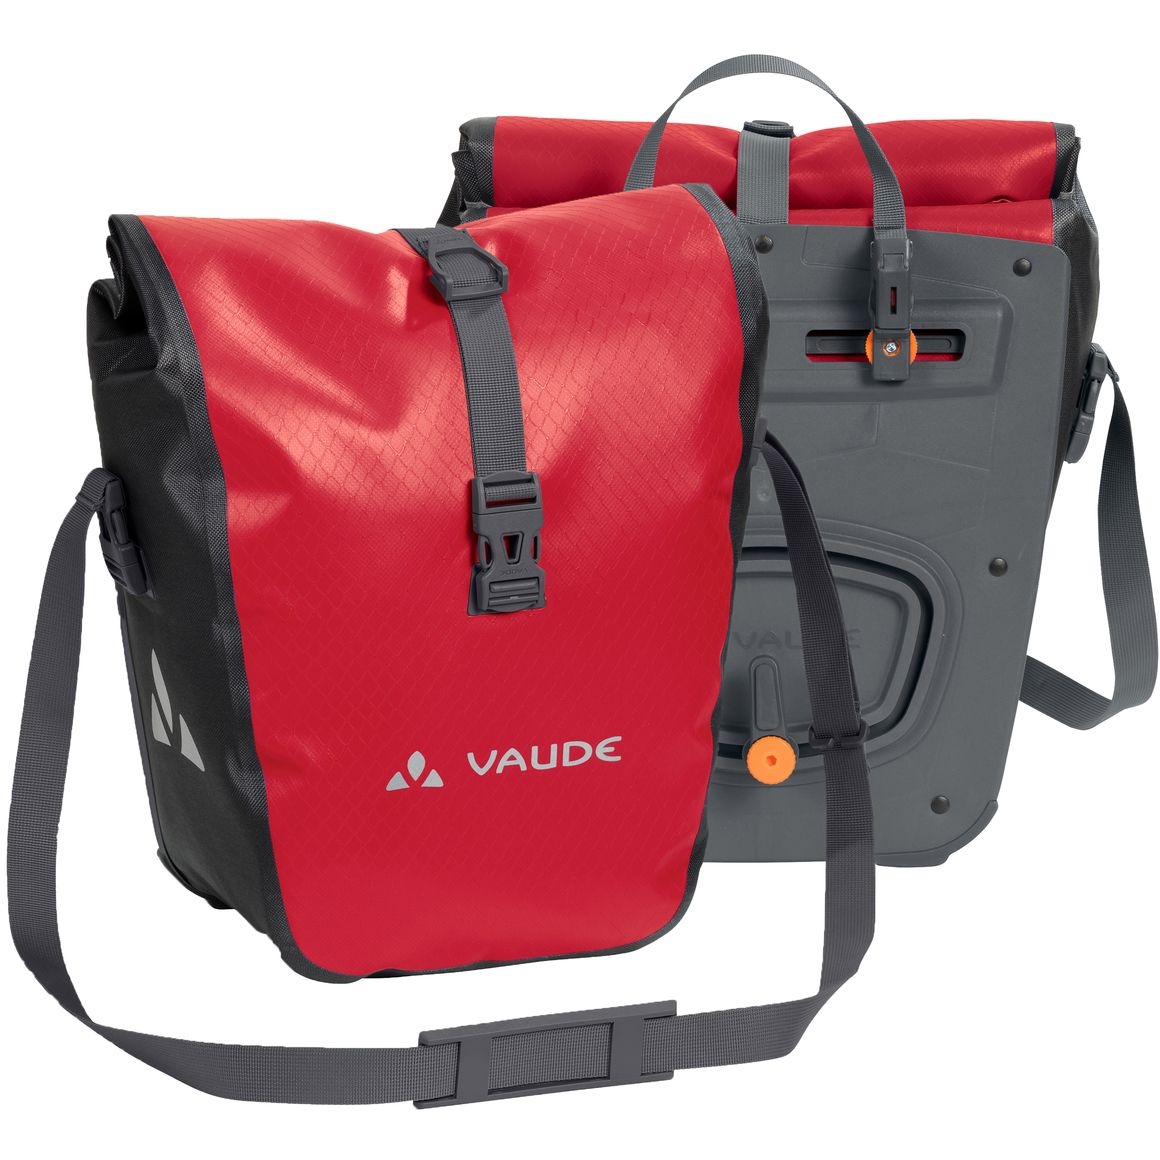 Produktbild von Vaude Aqua Vorderrad Fahrradtasche (Paar) - 2x14L - rot